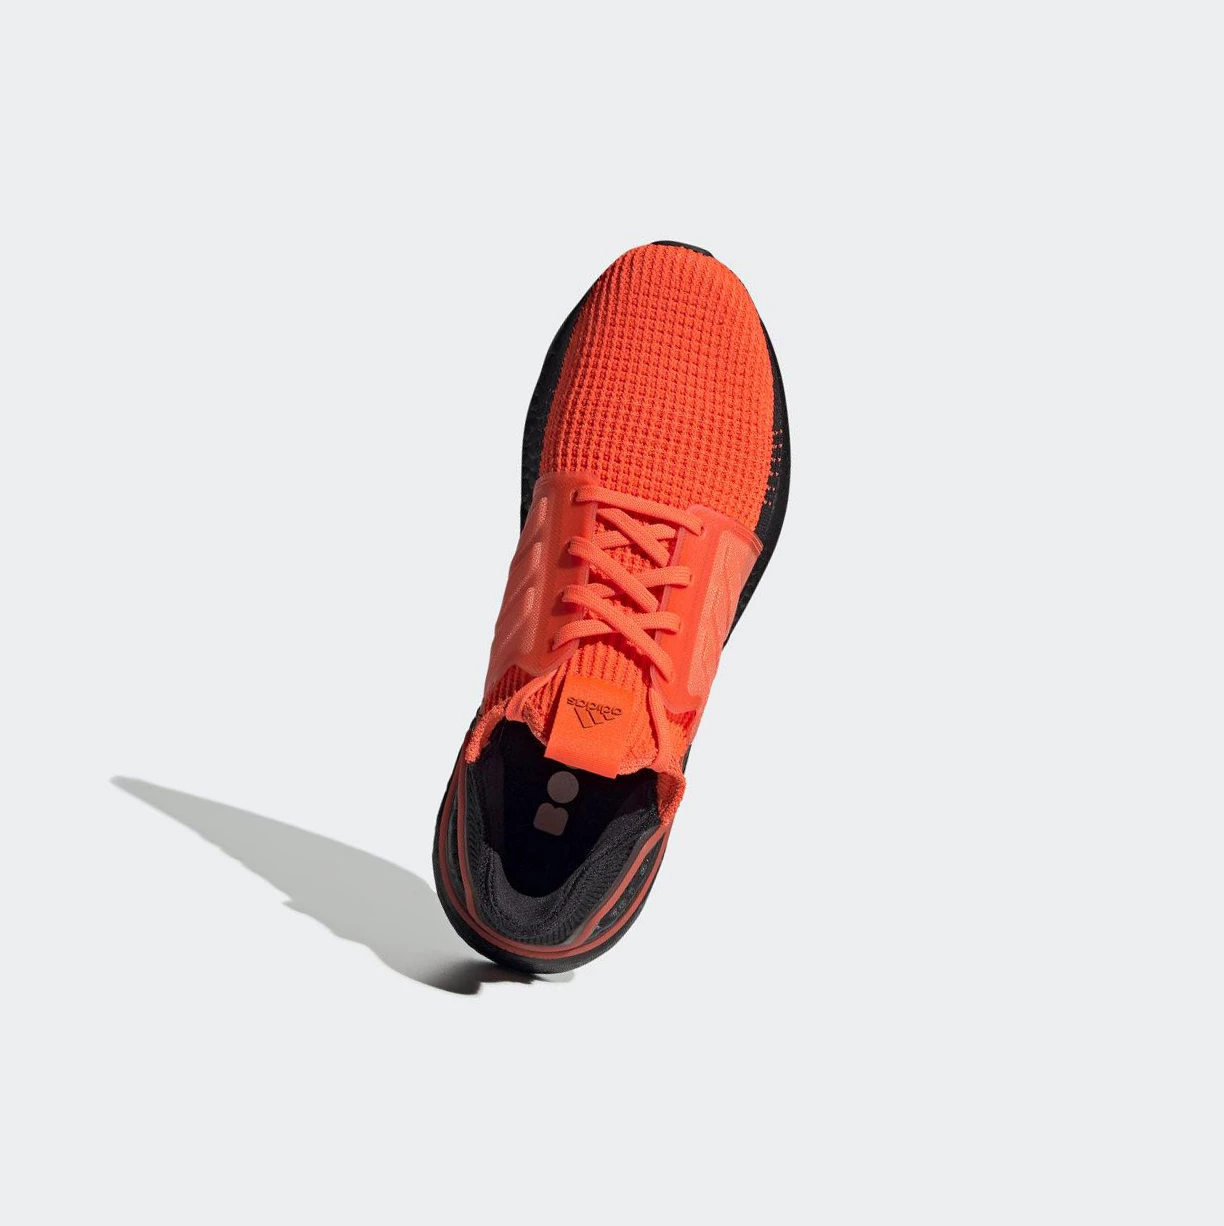 Bezecke Topanky Adidas Ultraboost 19 Damske Oranžové | 962SKCJDMVX